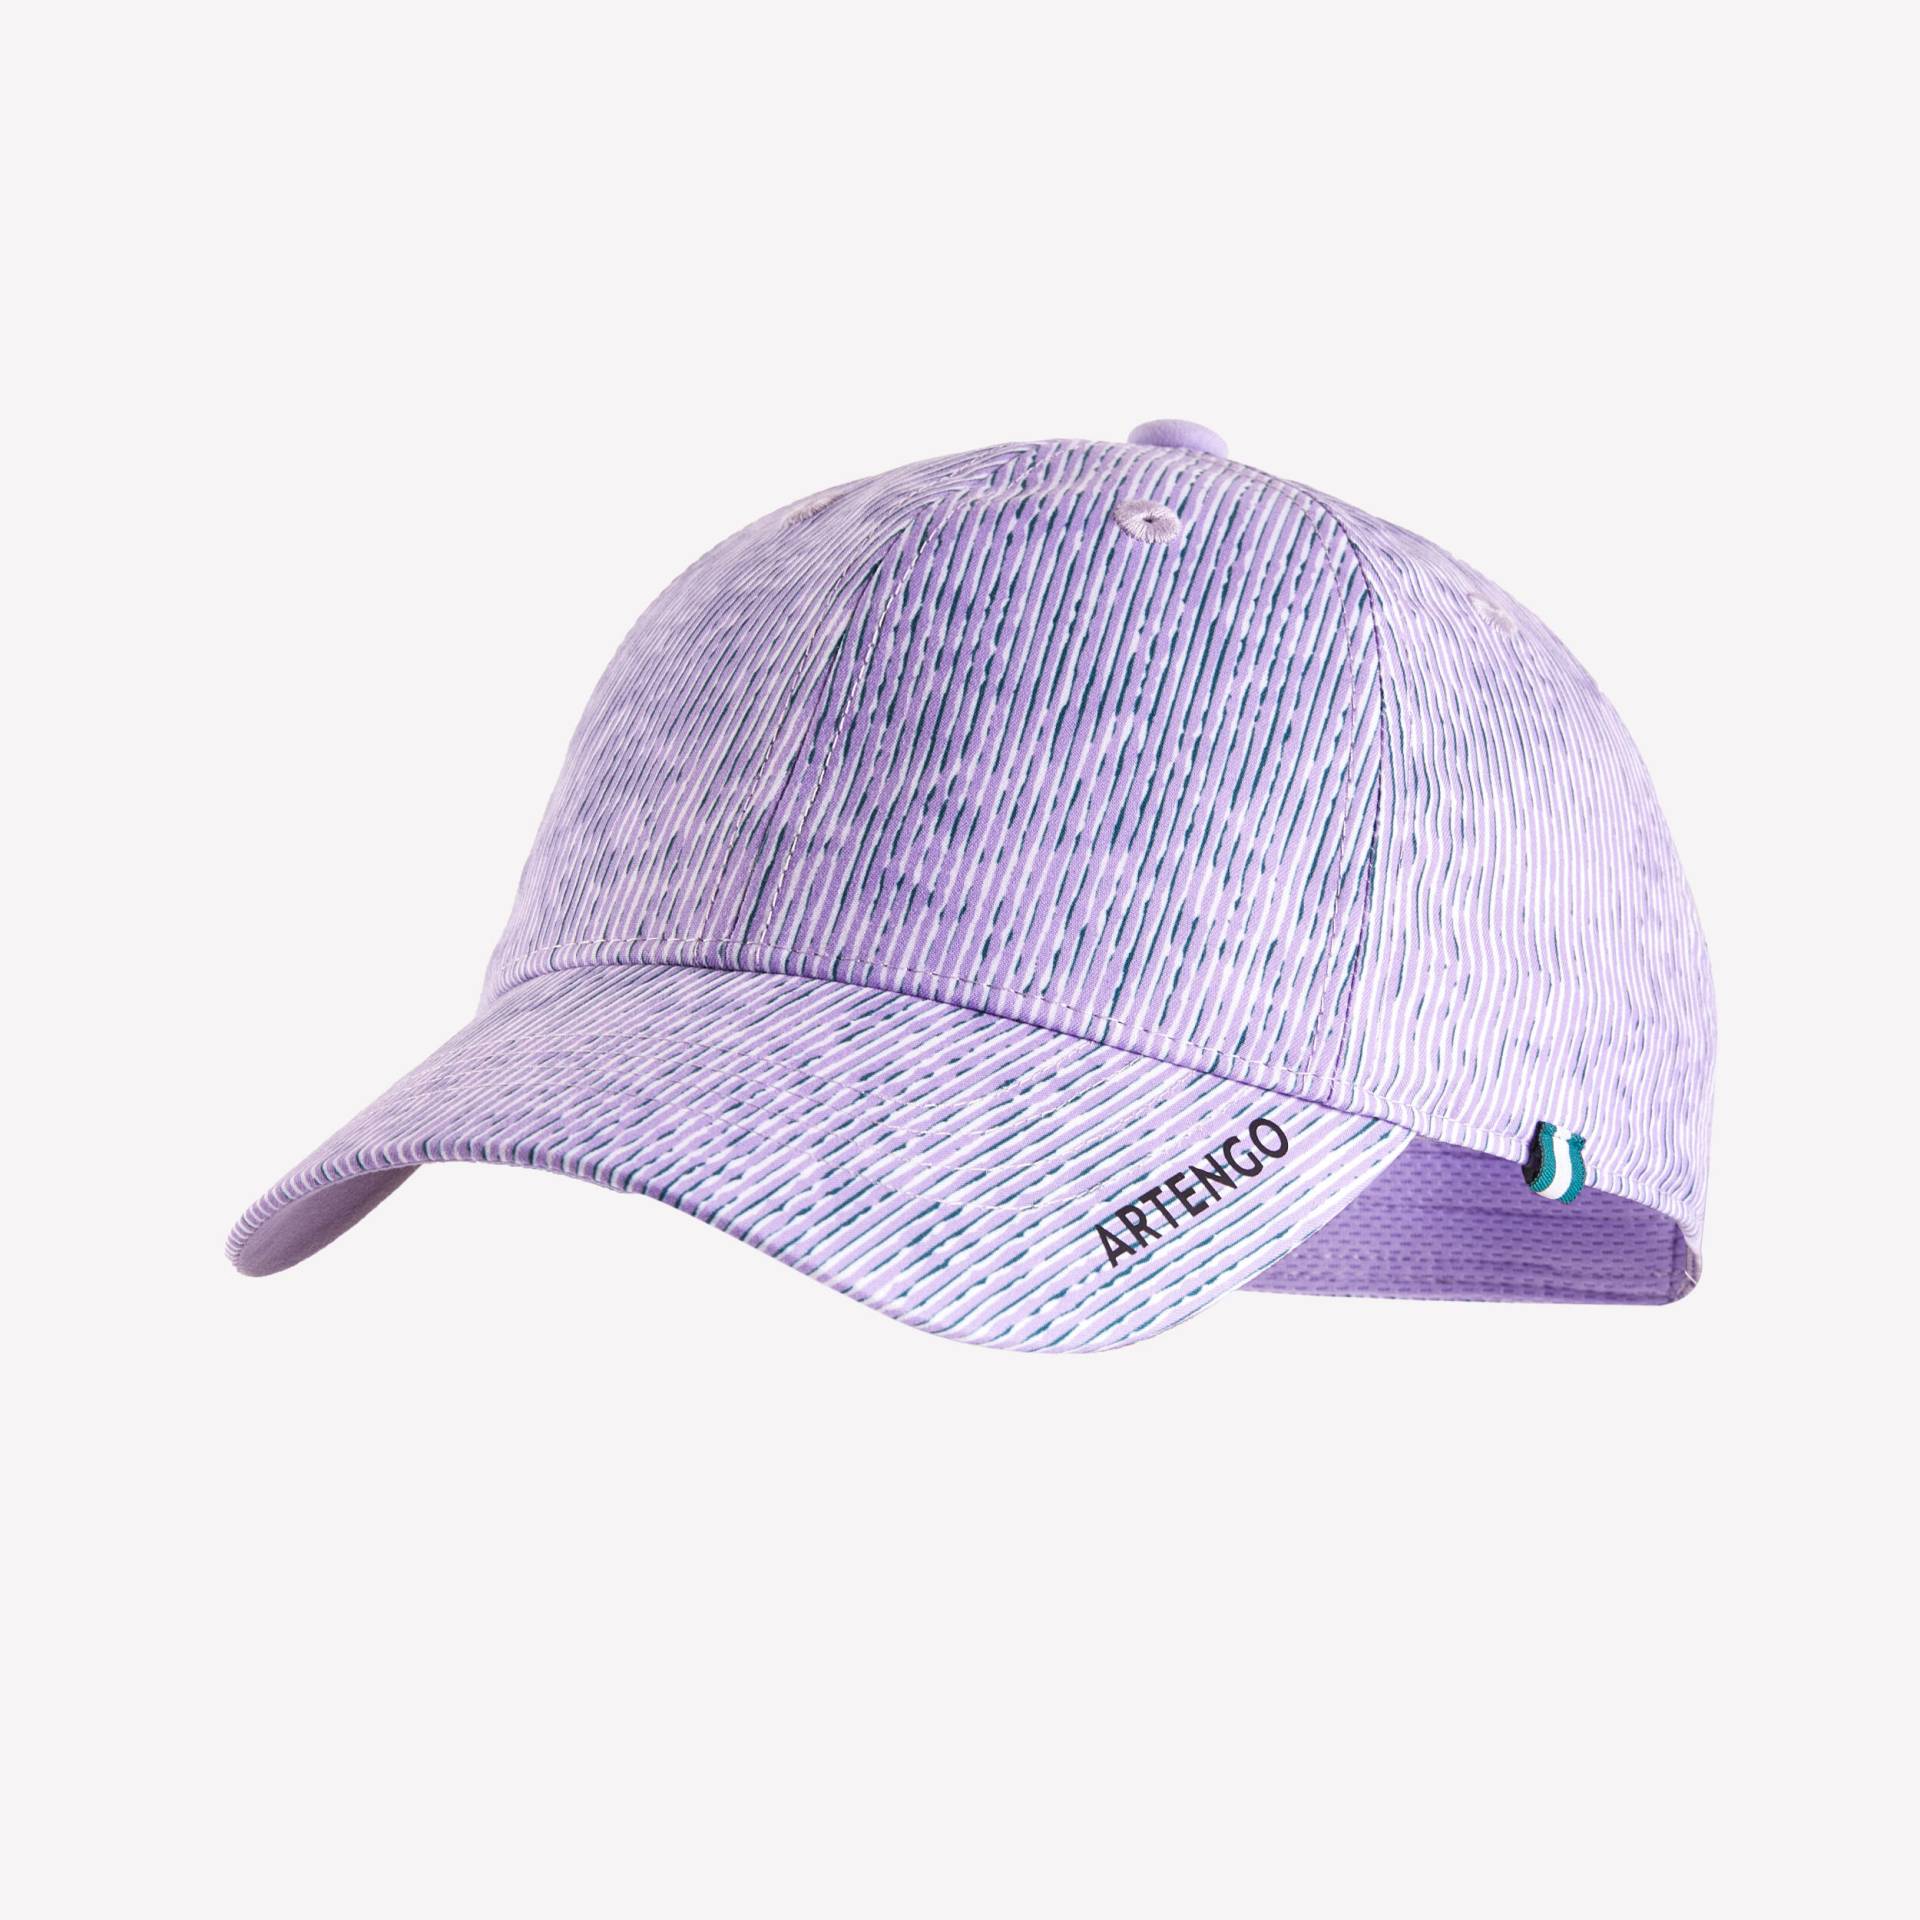 Schirmmütze Tennis-Cap TC 500 Gr. 54 violett/marineblau von ARTENGO